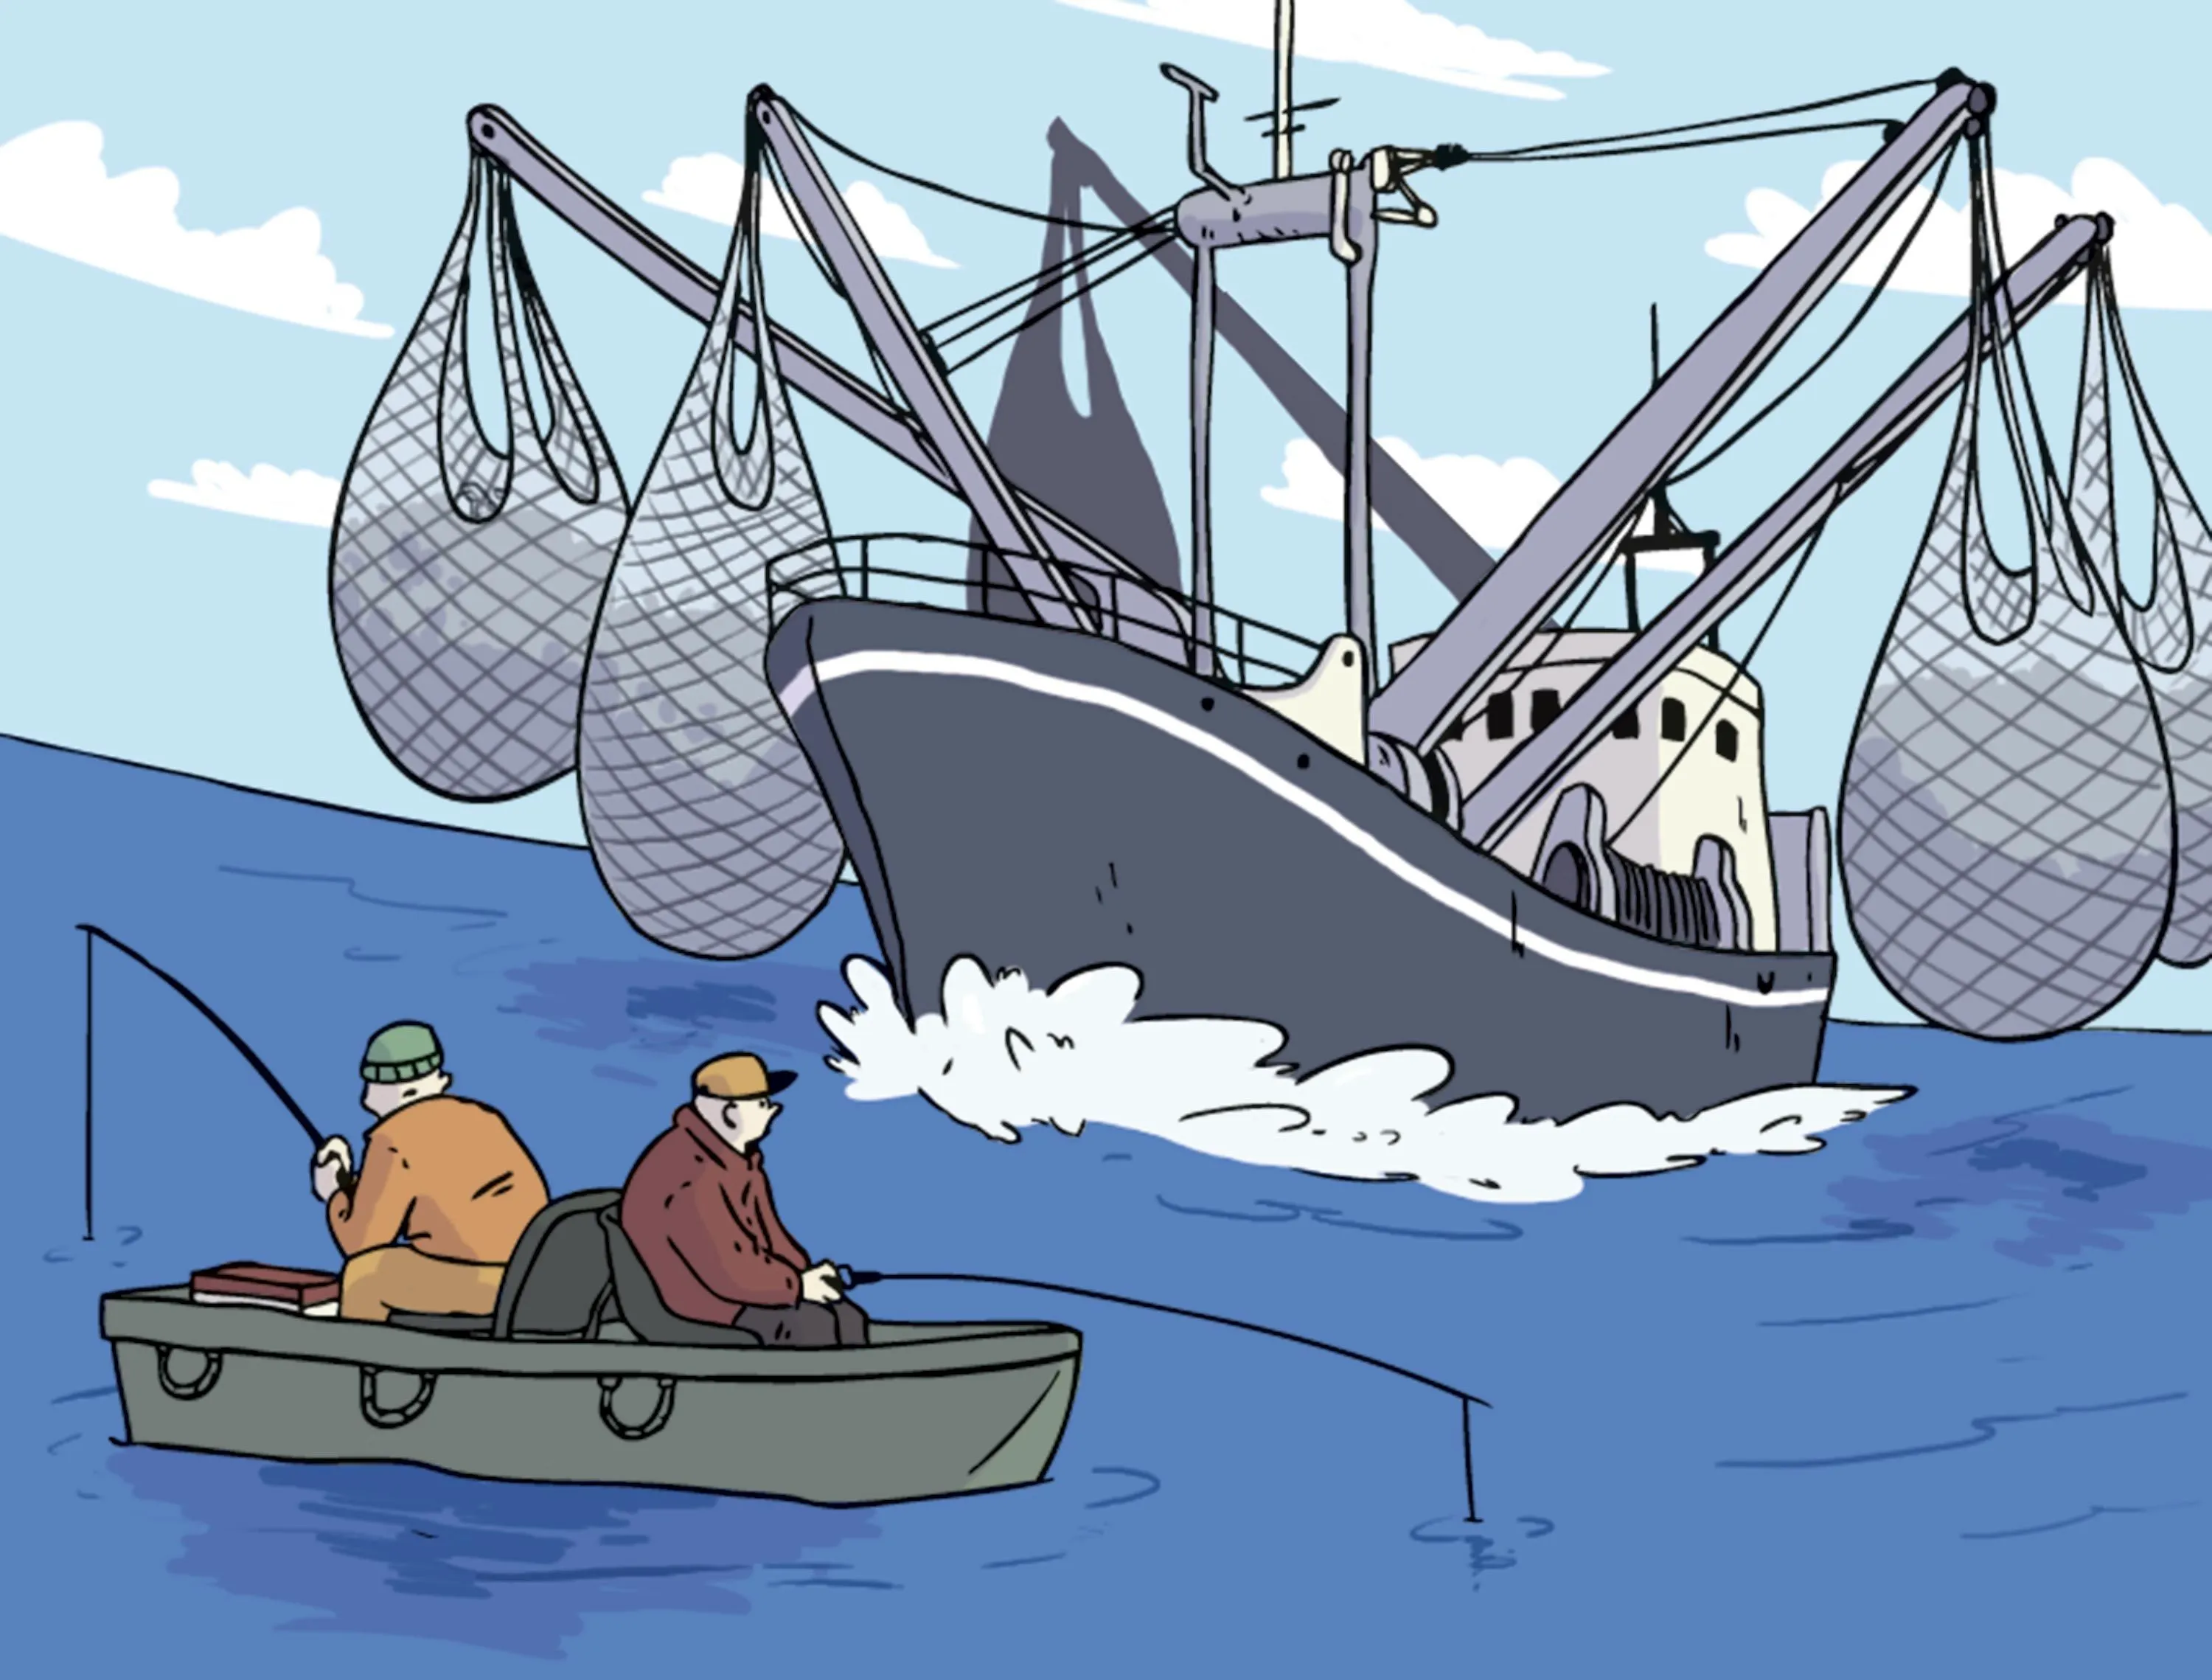 Une caricature de l'exploitation des ressources halieutiques.